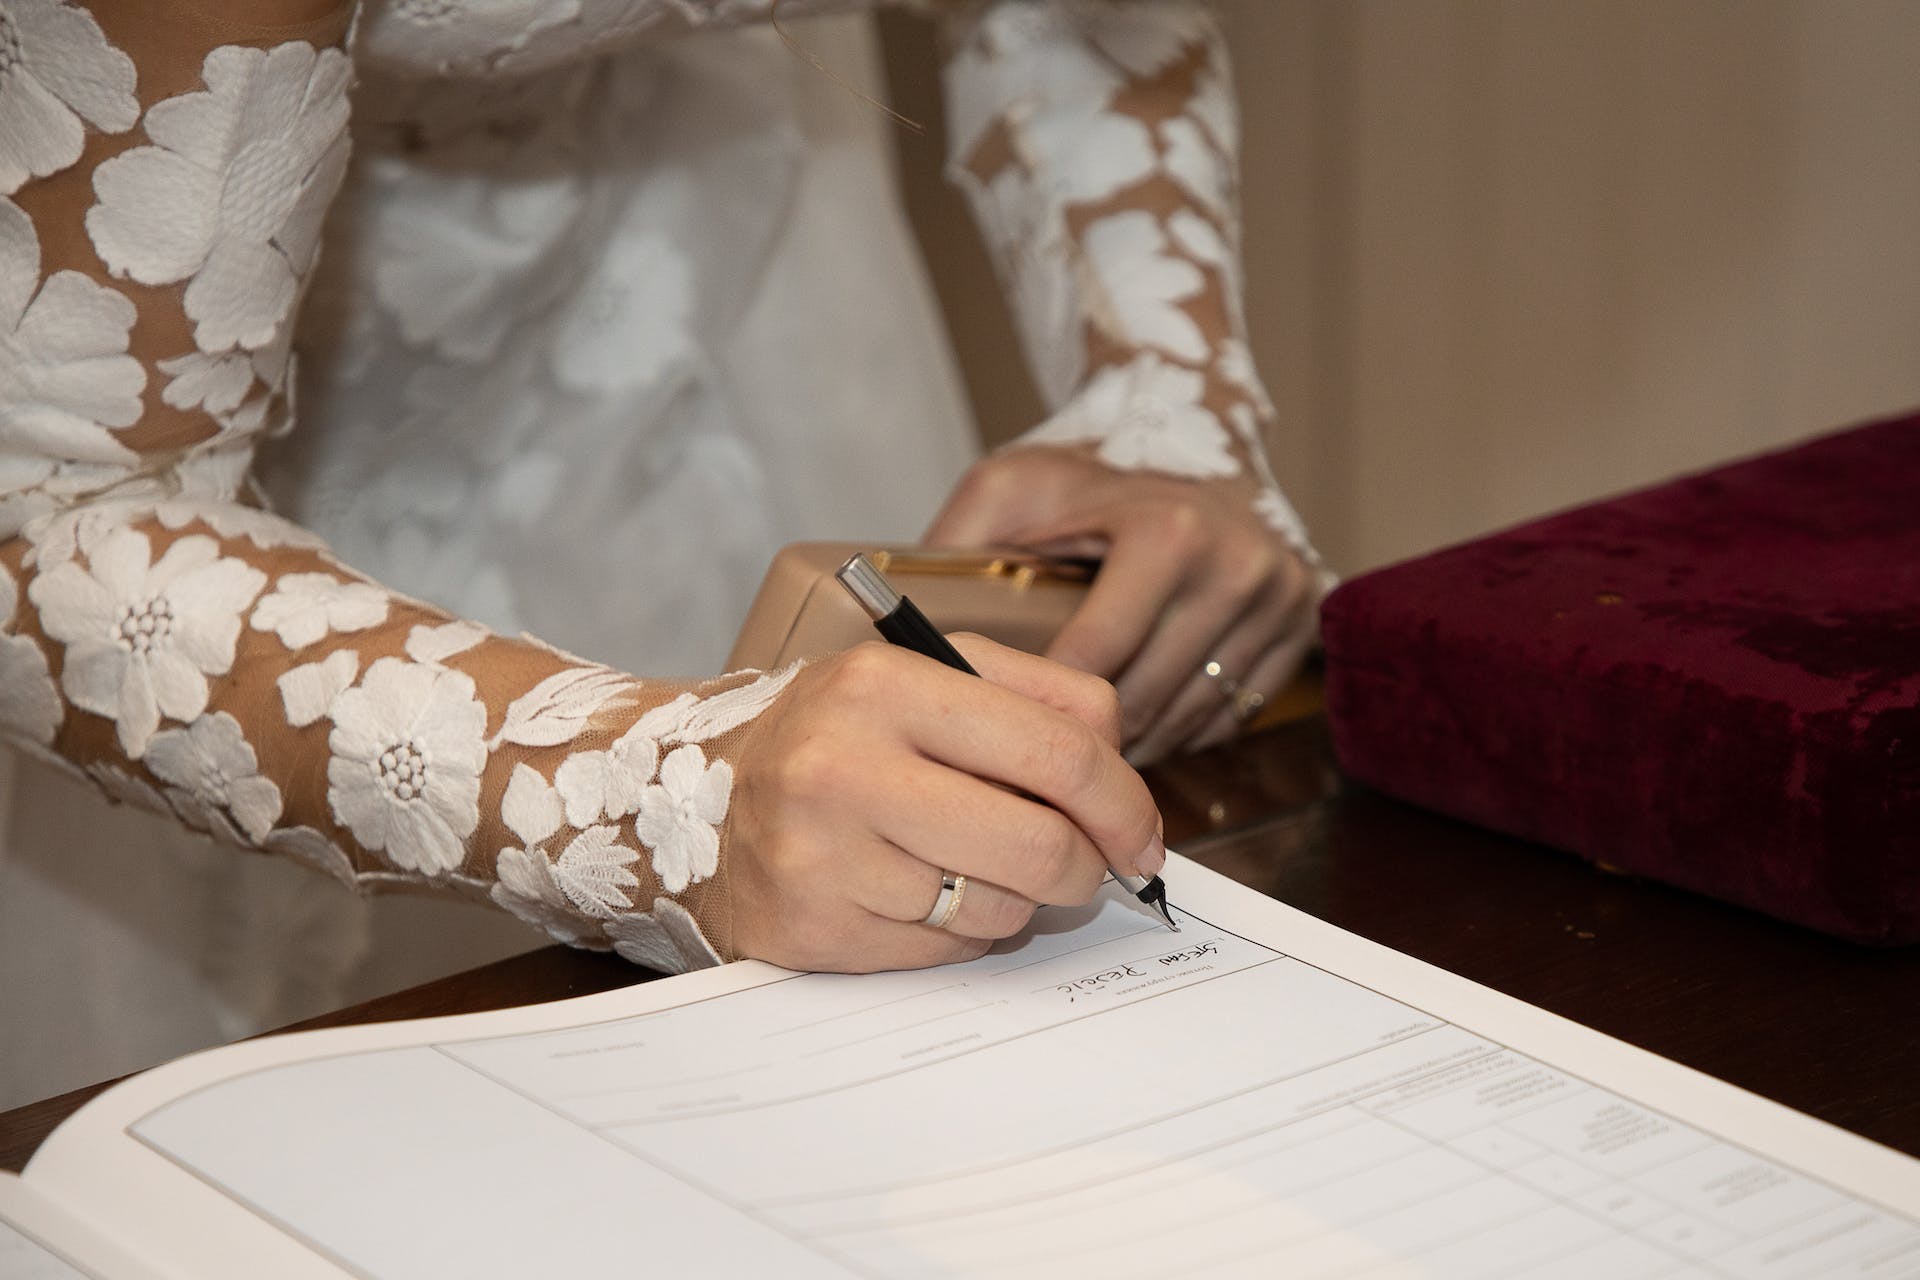 Eine Braut beim Unterschreiben eines Dokuments | Quelle: Pexels